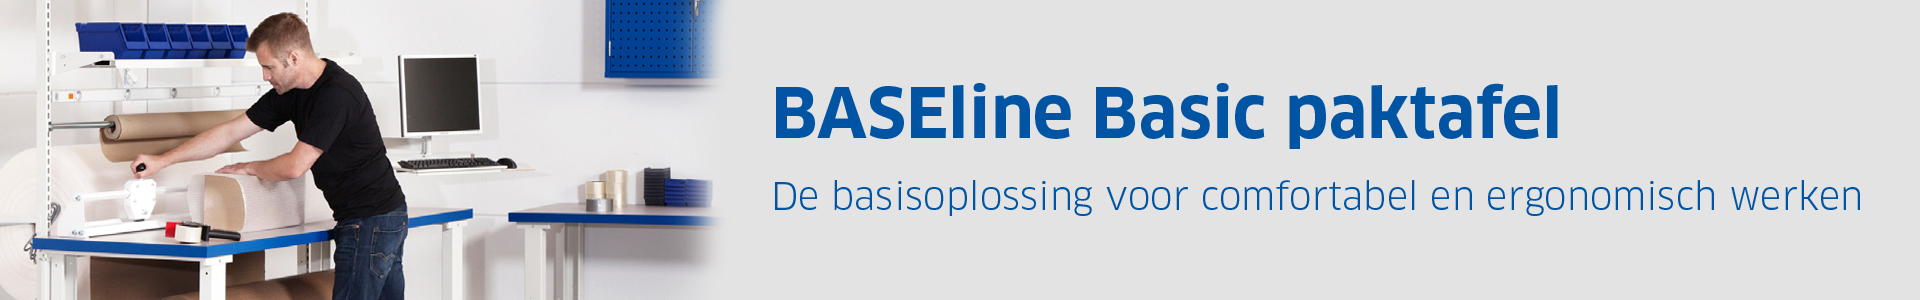 BASEline Basic paktafel